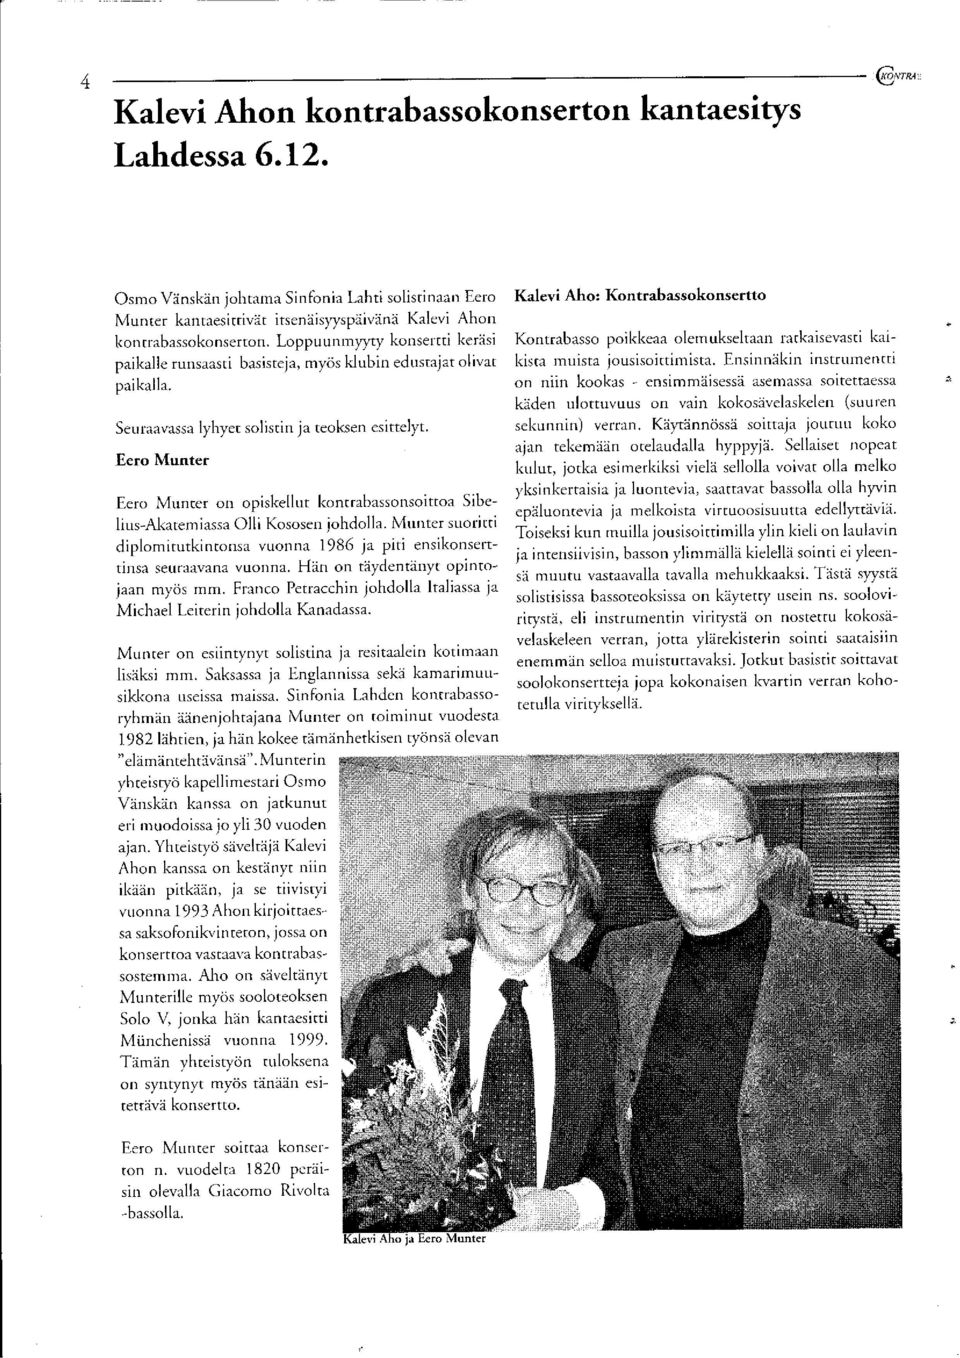 Eero Munter Eero Munter on opiskellut kontrabassonsoittoa Sibelius-Akatemiassa Olli Kososen johdolla. Munter suoritti diplomitutkintonsa vuonna 1986 ja piti ensikonserttinsa seuraavana vuonna.